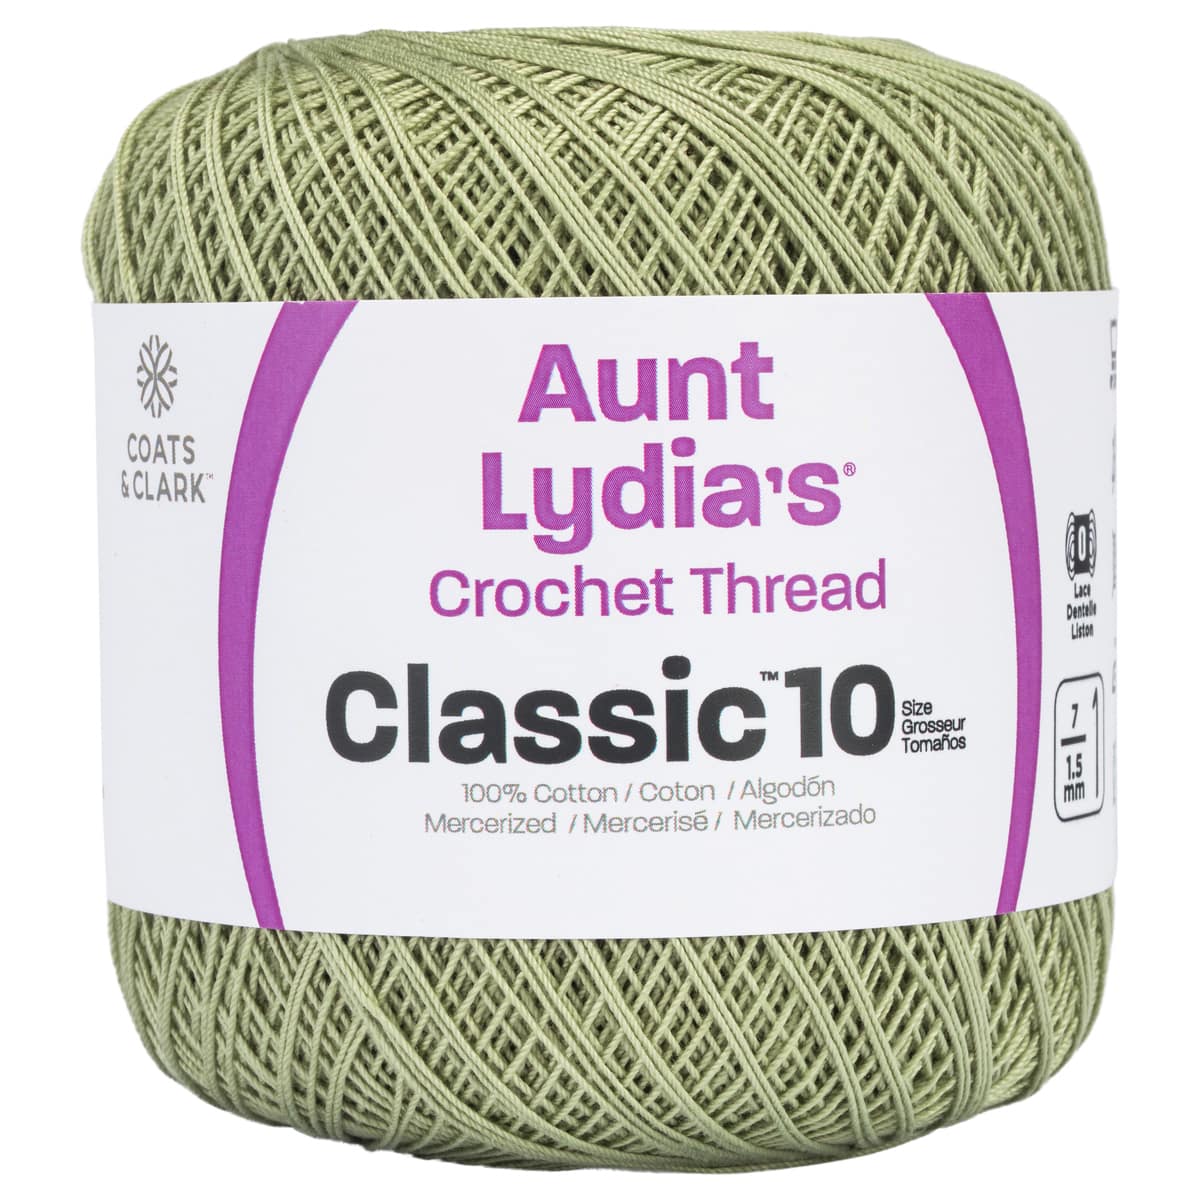 Fdit Lace Thread Colorful Hand Made DIY Knitting Crochet Stitch Thread Lace  Thread,Bulk Yarn,Tatting Thread 